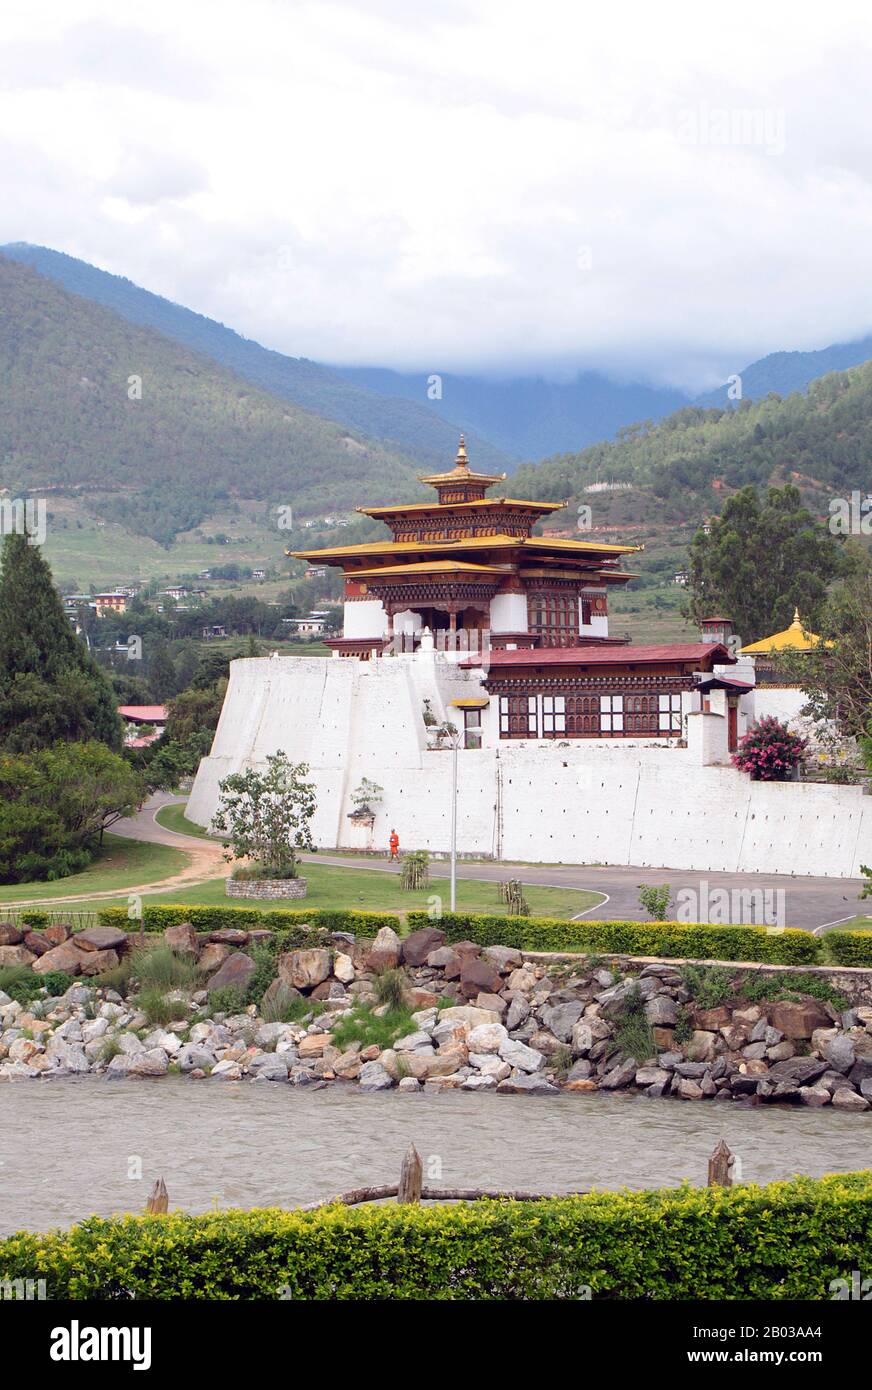 Le Punakha Dzong, également connu sous le nom de Pungtang Dewa chhenbi Phodrang ('le palais du grand bonheur ou du bonheur') a été construit en 1637 - 1638 par le premier Zhabdrung Rinpoché et fondateur de l'État bhoutanais, Ngawang Namgyal (1594 - 1651). C'est le deuxième dzong le plus grand et le deuxième plus ancien (forteresse) au Bhoutan, situé au confluent des rivières Pho Chhu (père) et Mo Chhu (mère) dans la vallée de Punakha-Wangdue. Punakha Dzong est le centre administratif du district de Punakha, et a autrefois servi de centre administratif et de siège du gouvernement du Bhoutan jusqu'en 1855, lorsque la capitale a été transférée à Thi Banque D'Images